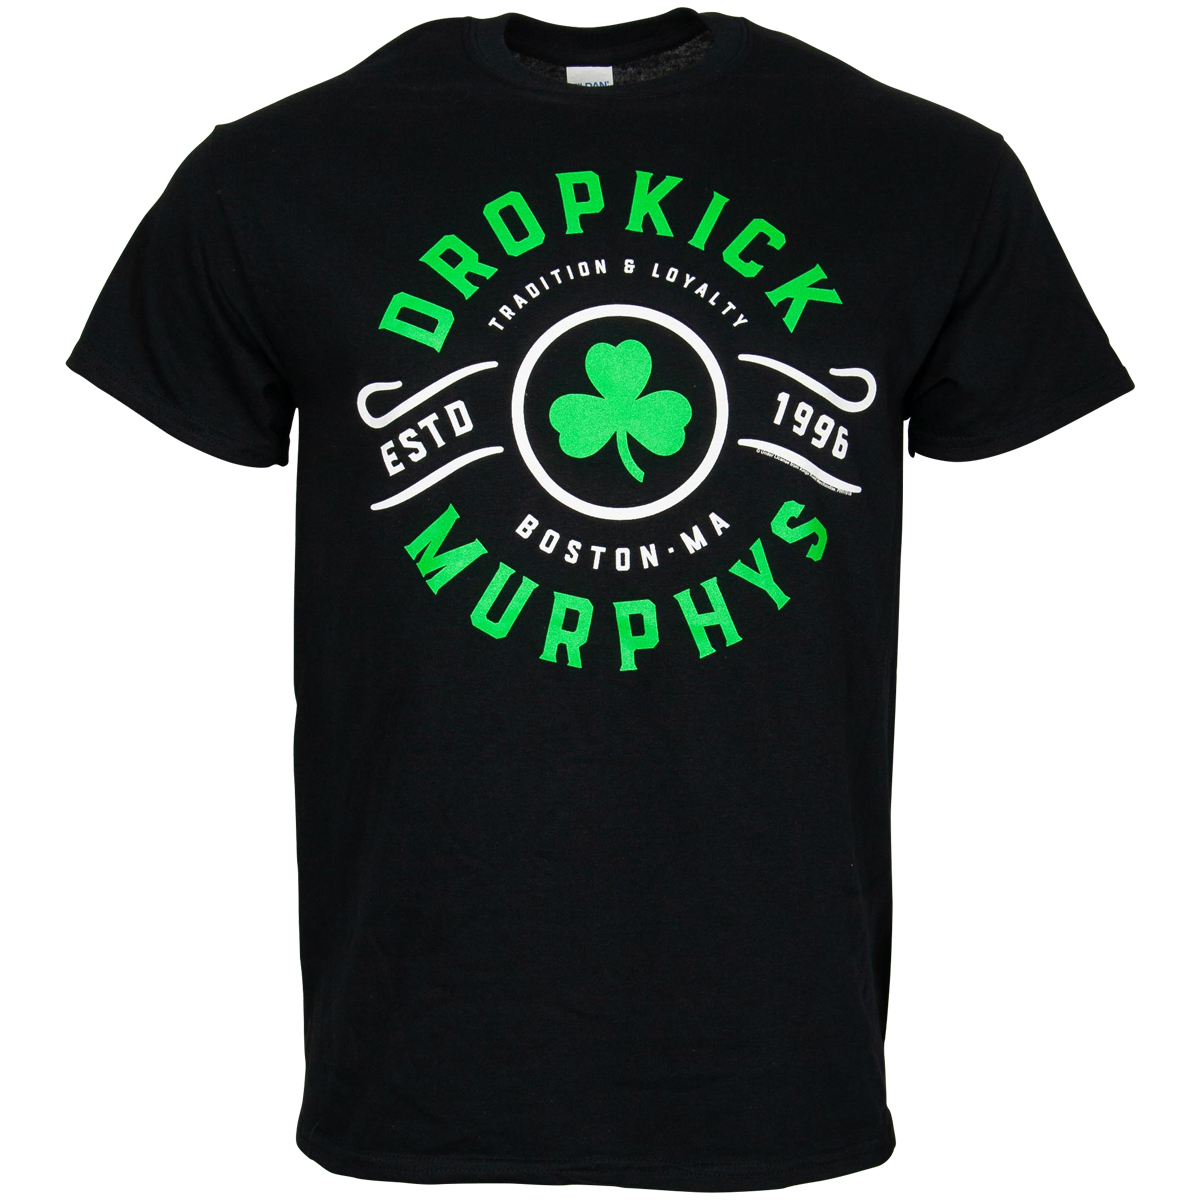 Dropkick Murphys - T-Shirt Tradition & Loyality - schwarz